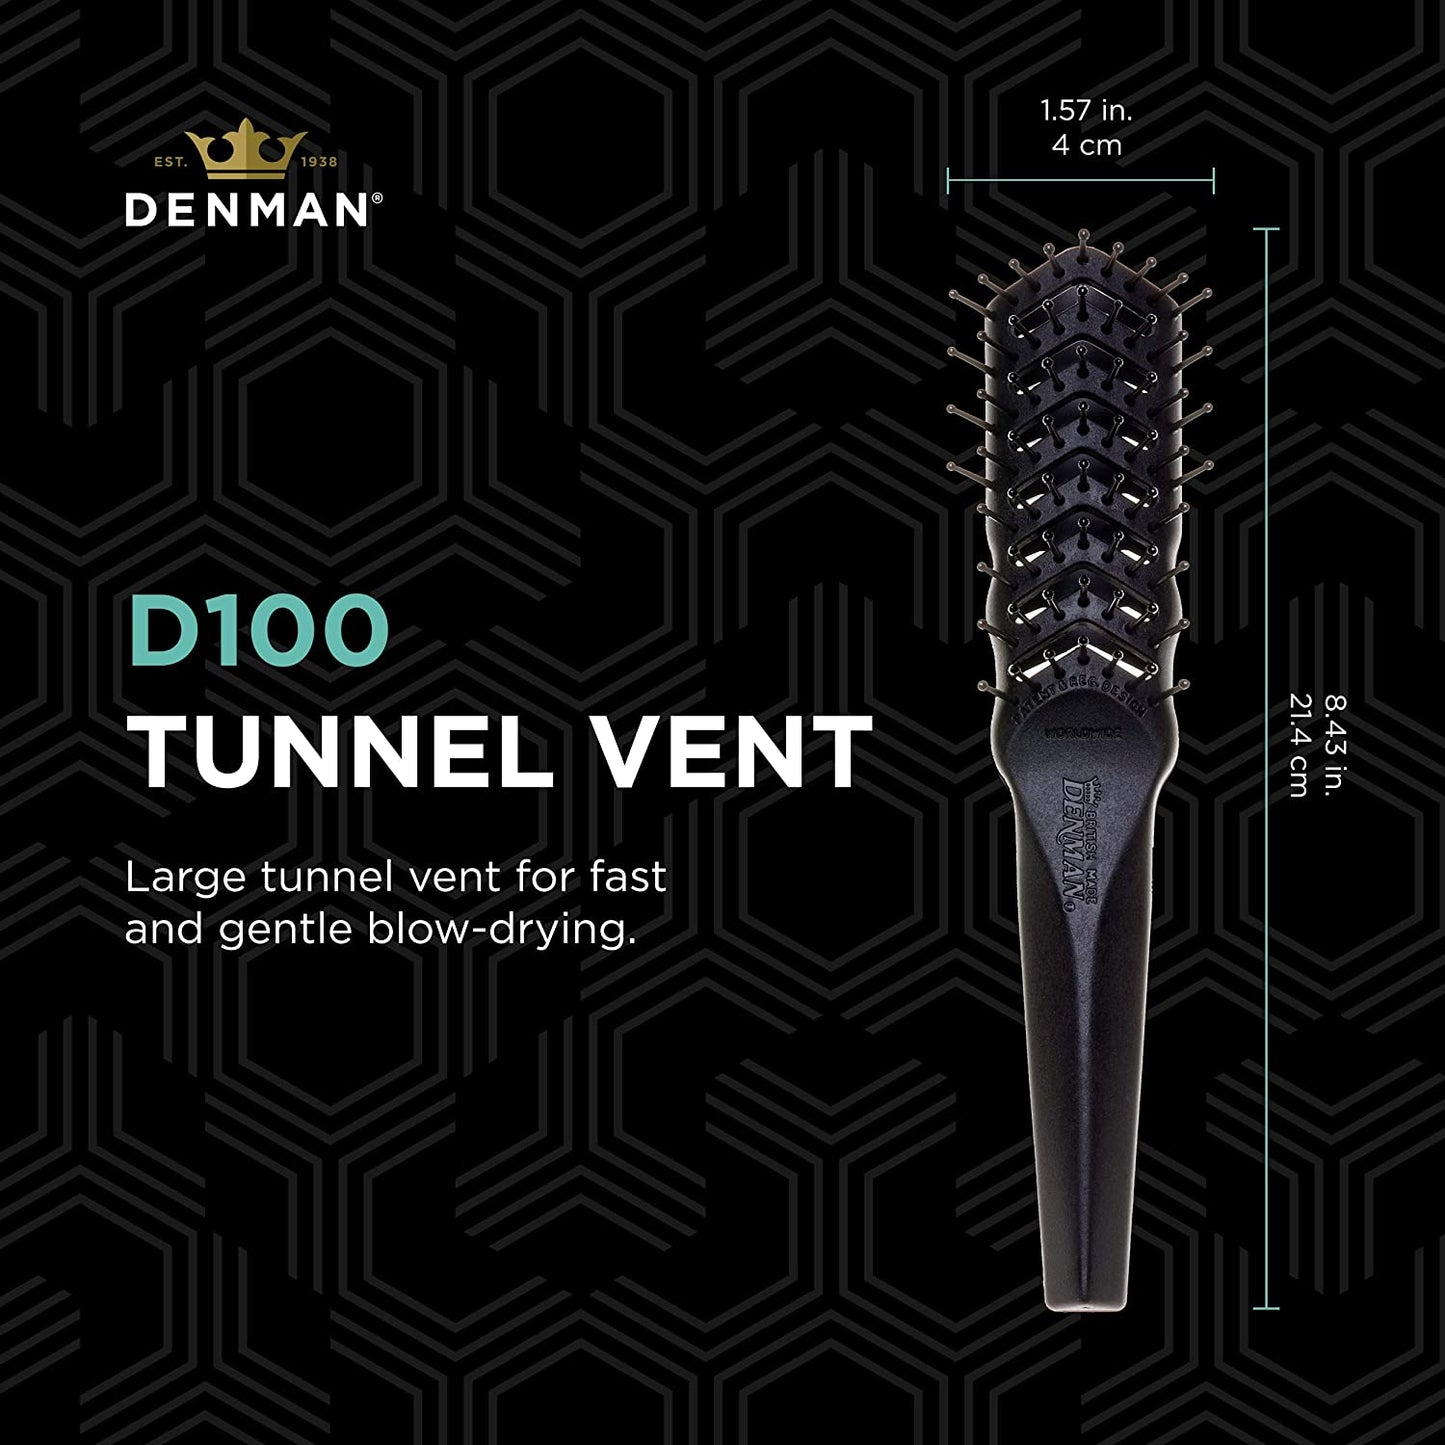 Denman Tunnel Vent D100 三角排骨梳